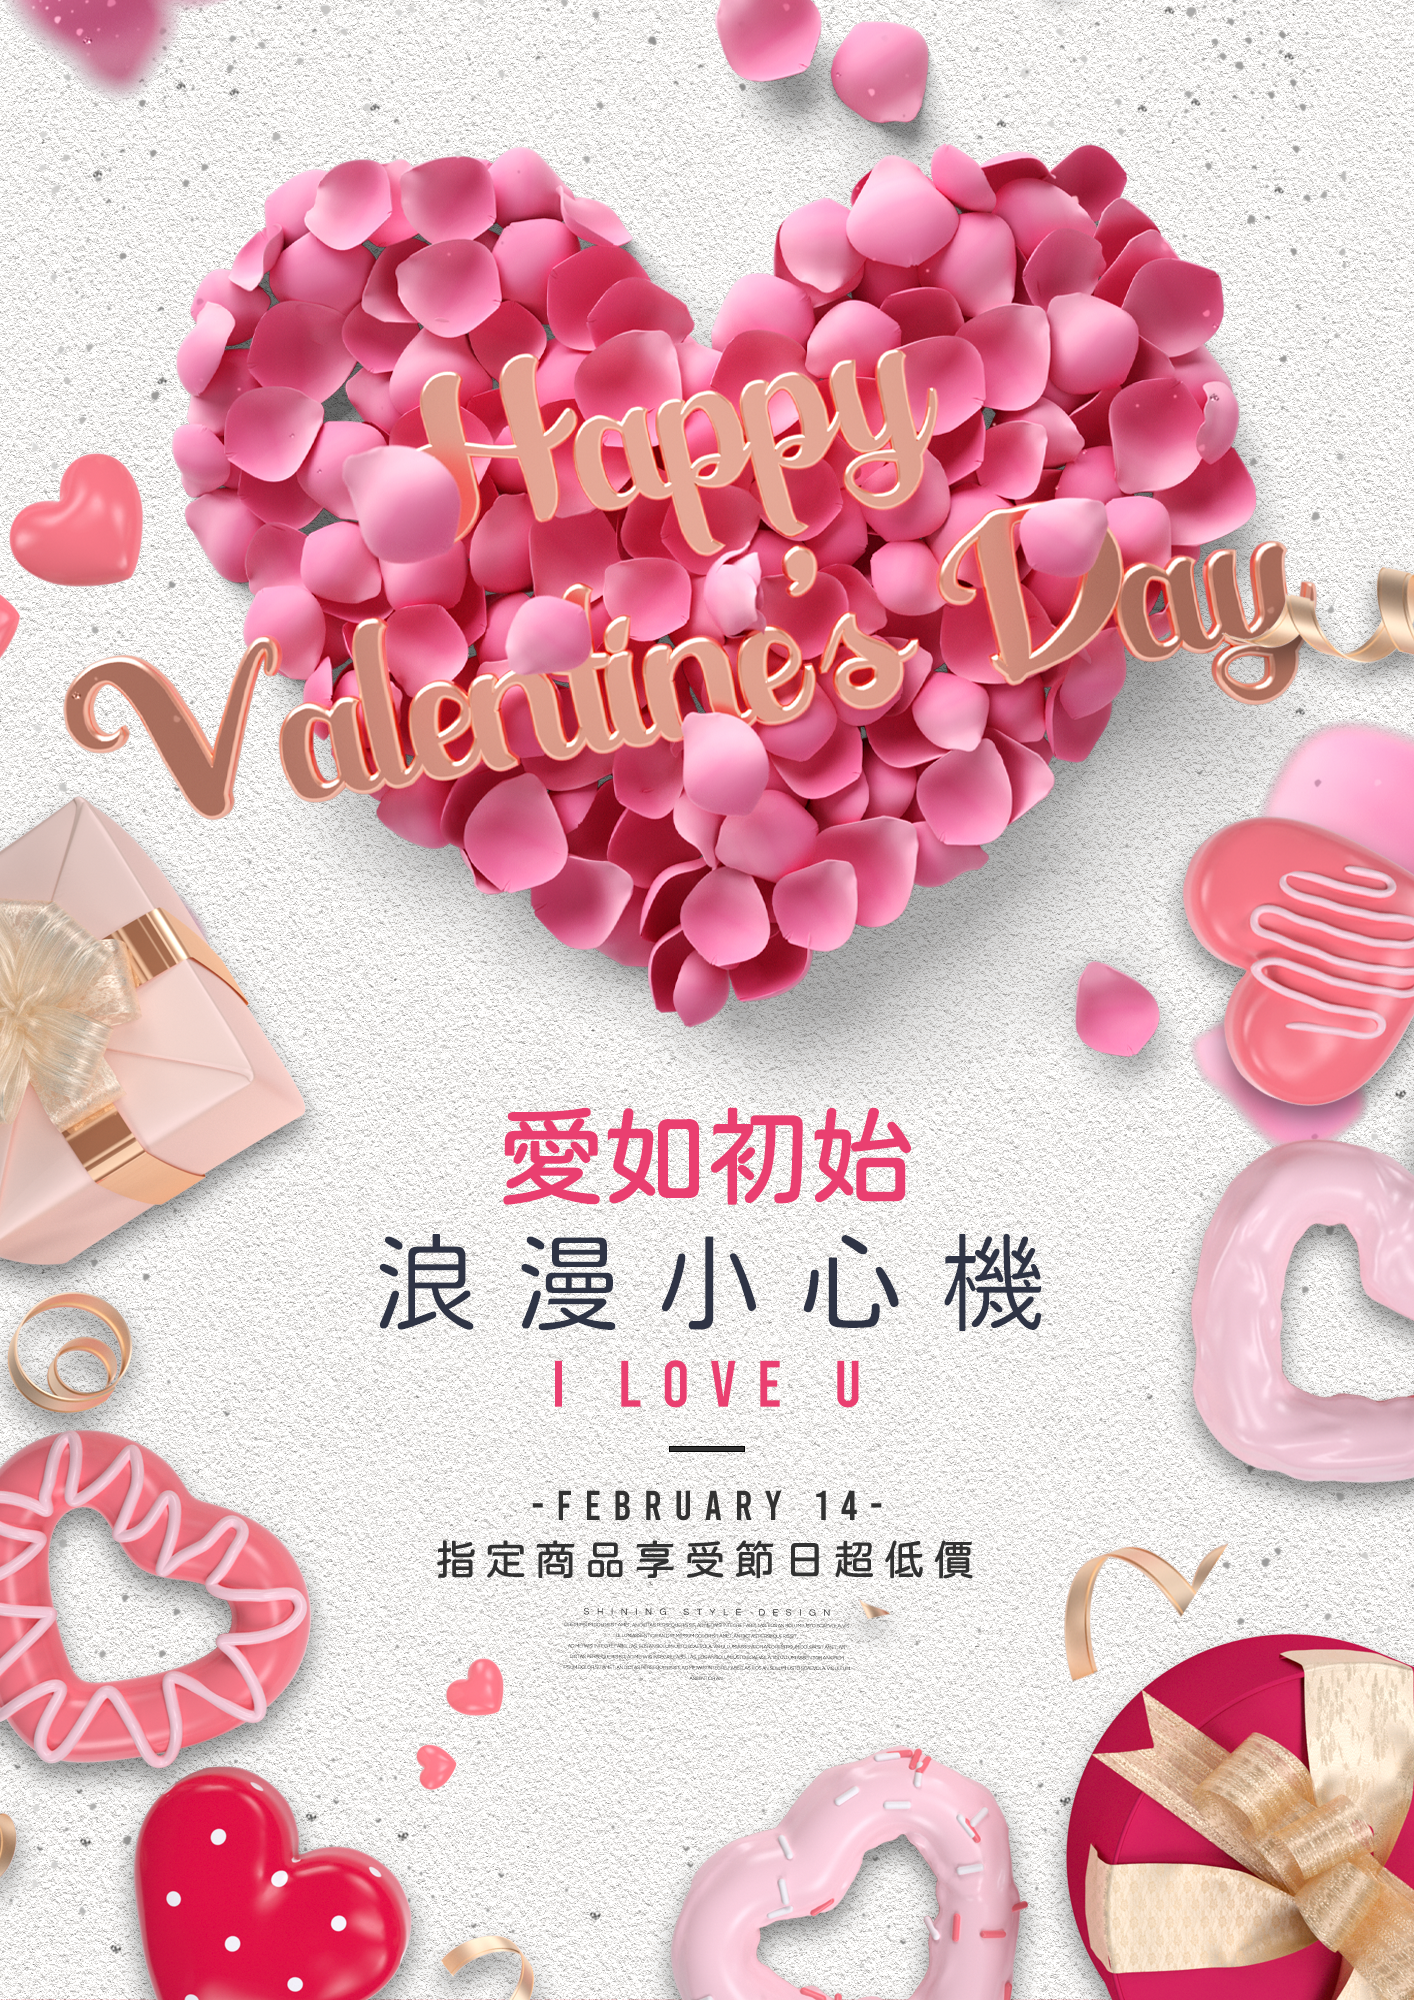 花瓣爱心甜品巧克力礼盒情人节节日宣传促销海报图片